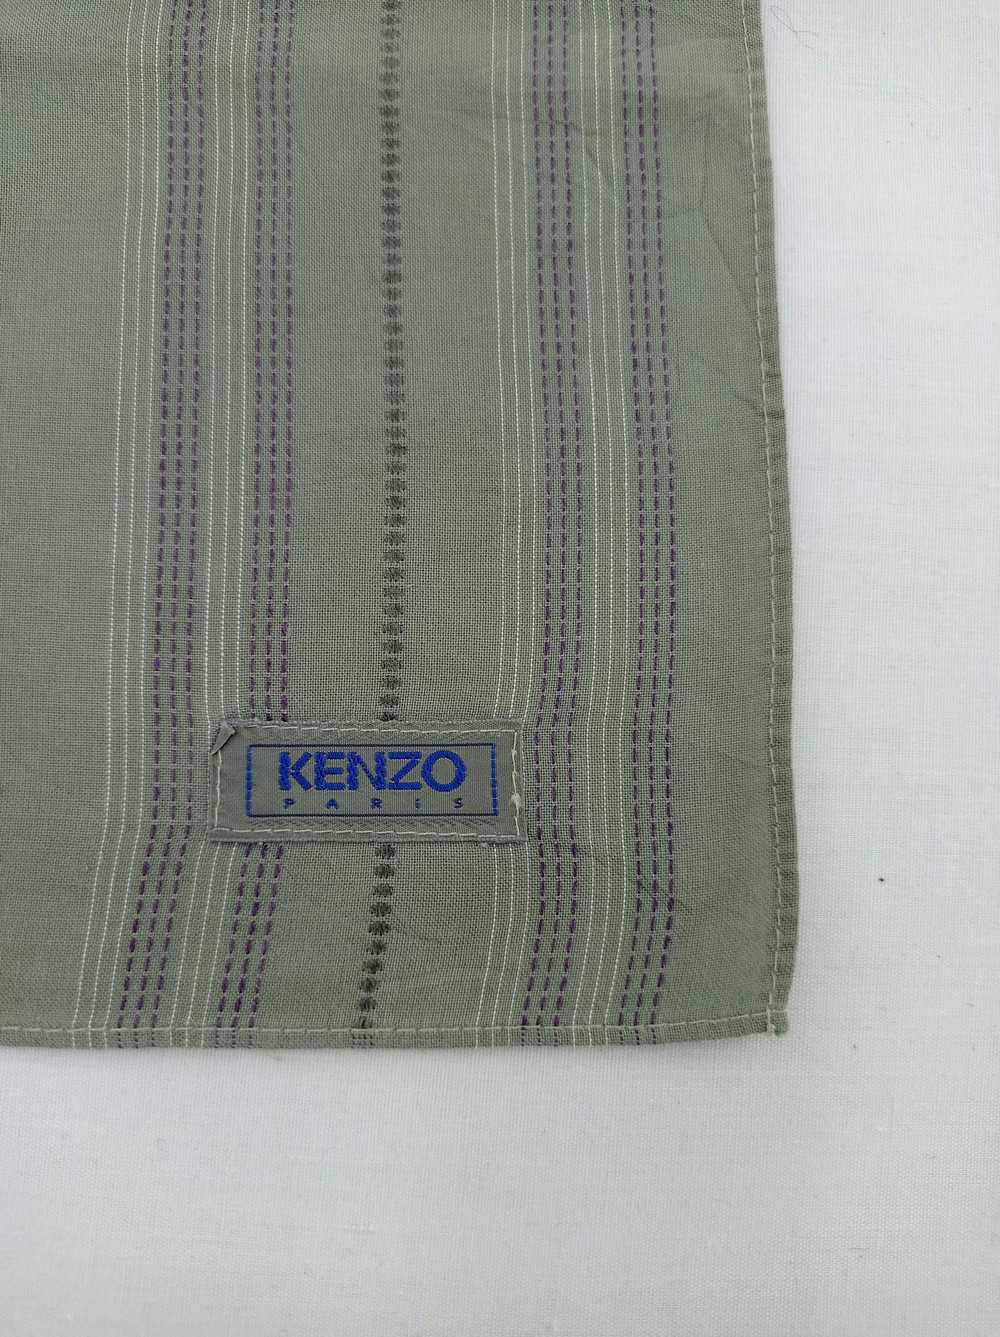 Kenzo Kenzo Handkerchief / Neckwear / Bandana - image 4